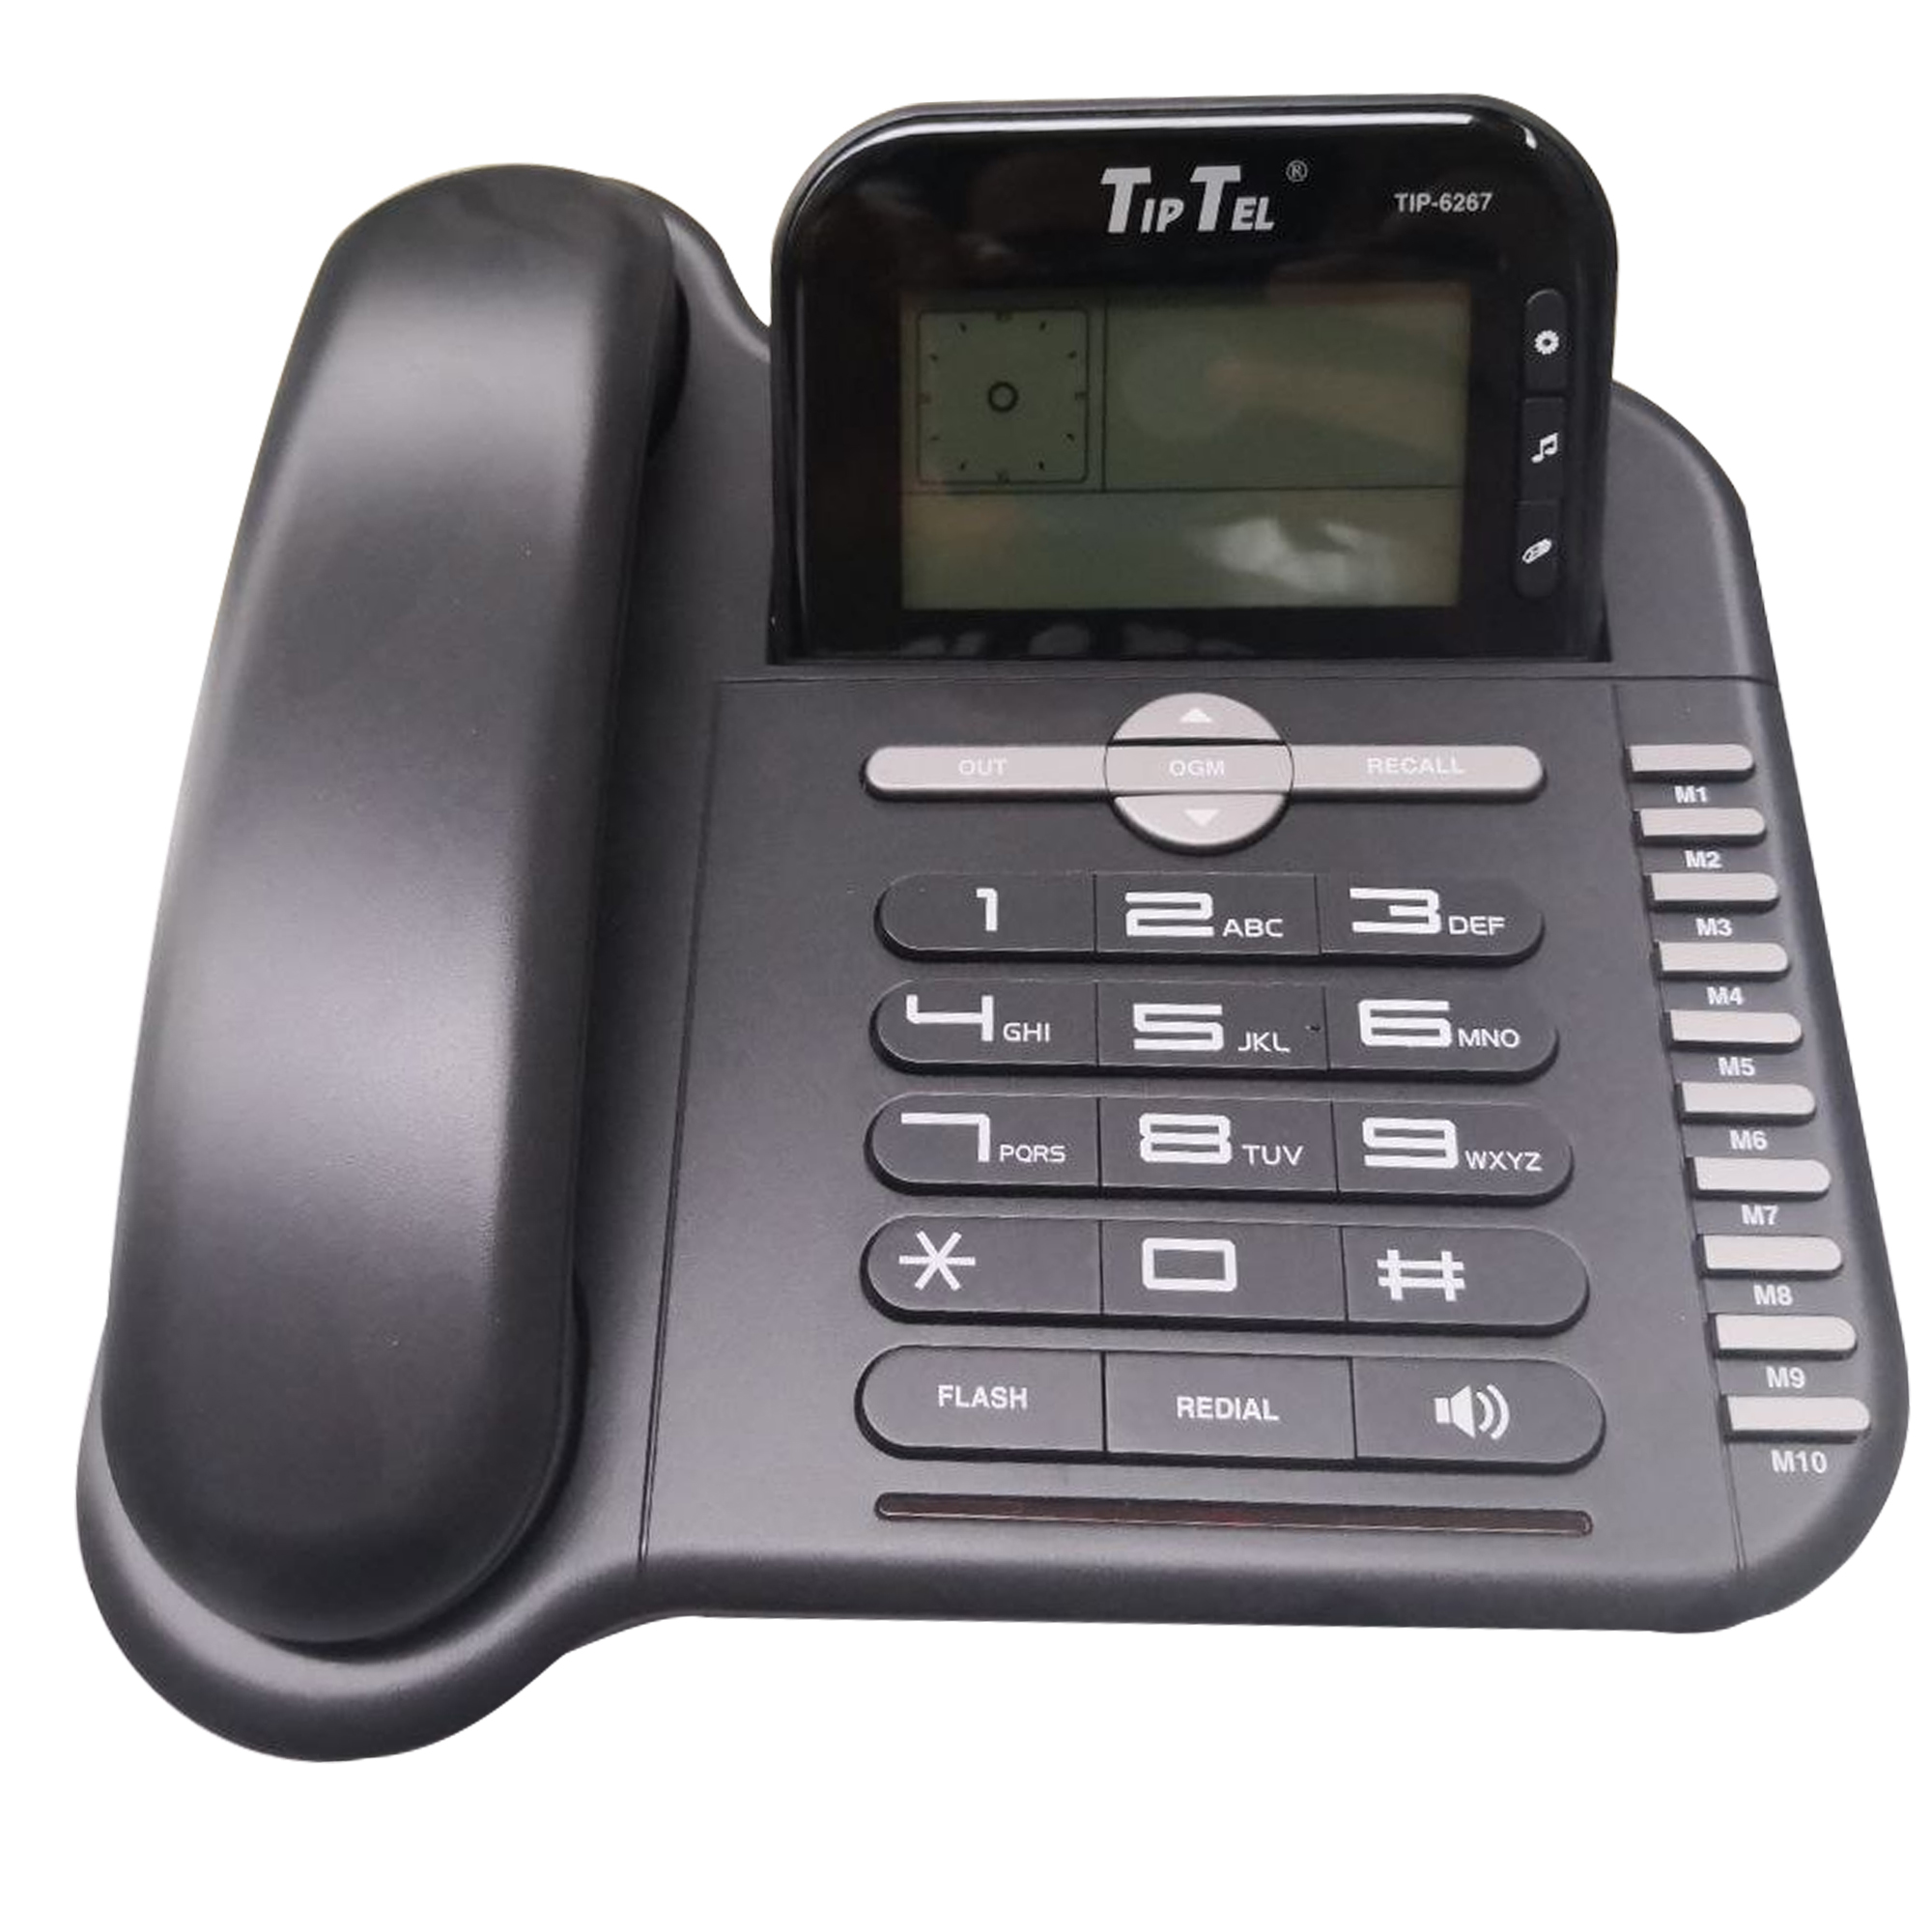 نکته خرید - قیمت روز تلفن تیپ تل مدل 6267 خرید